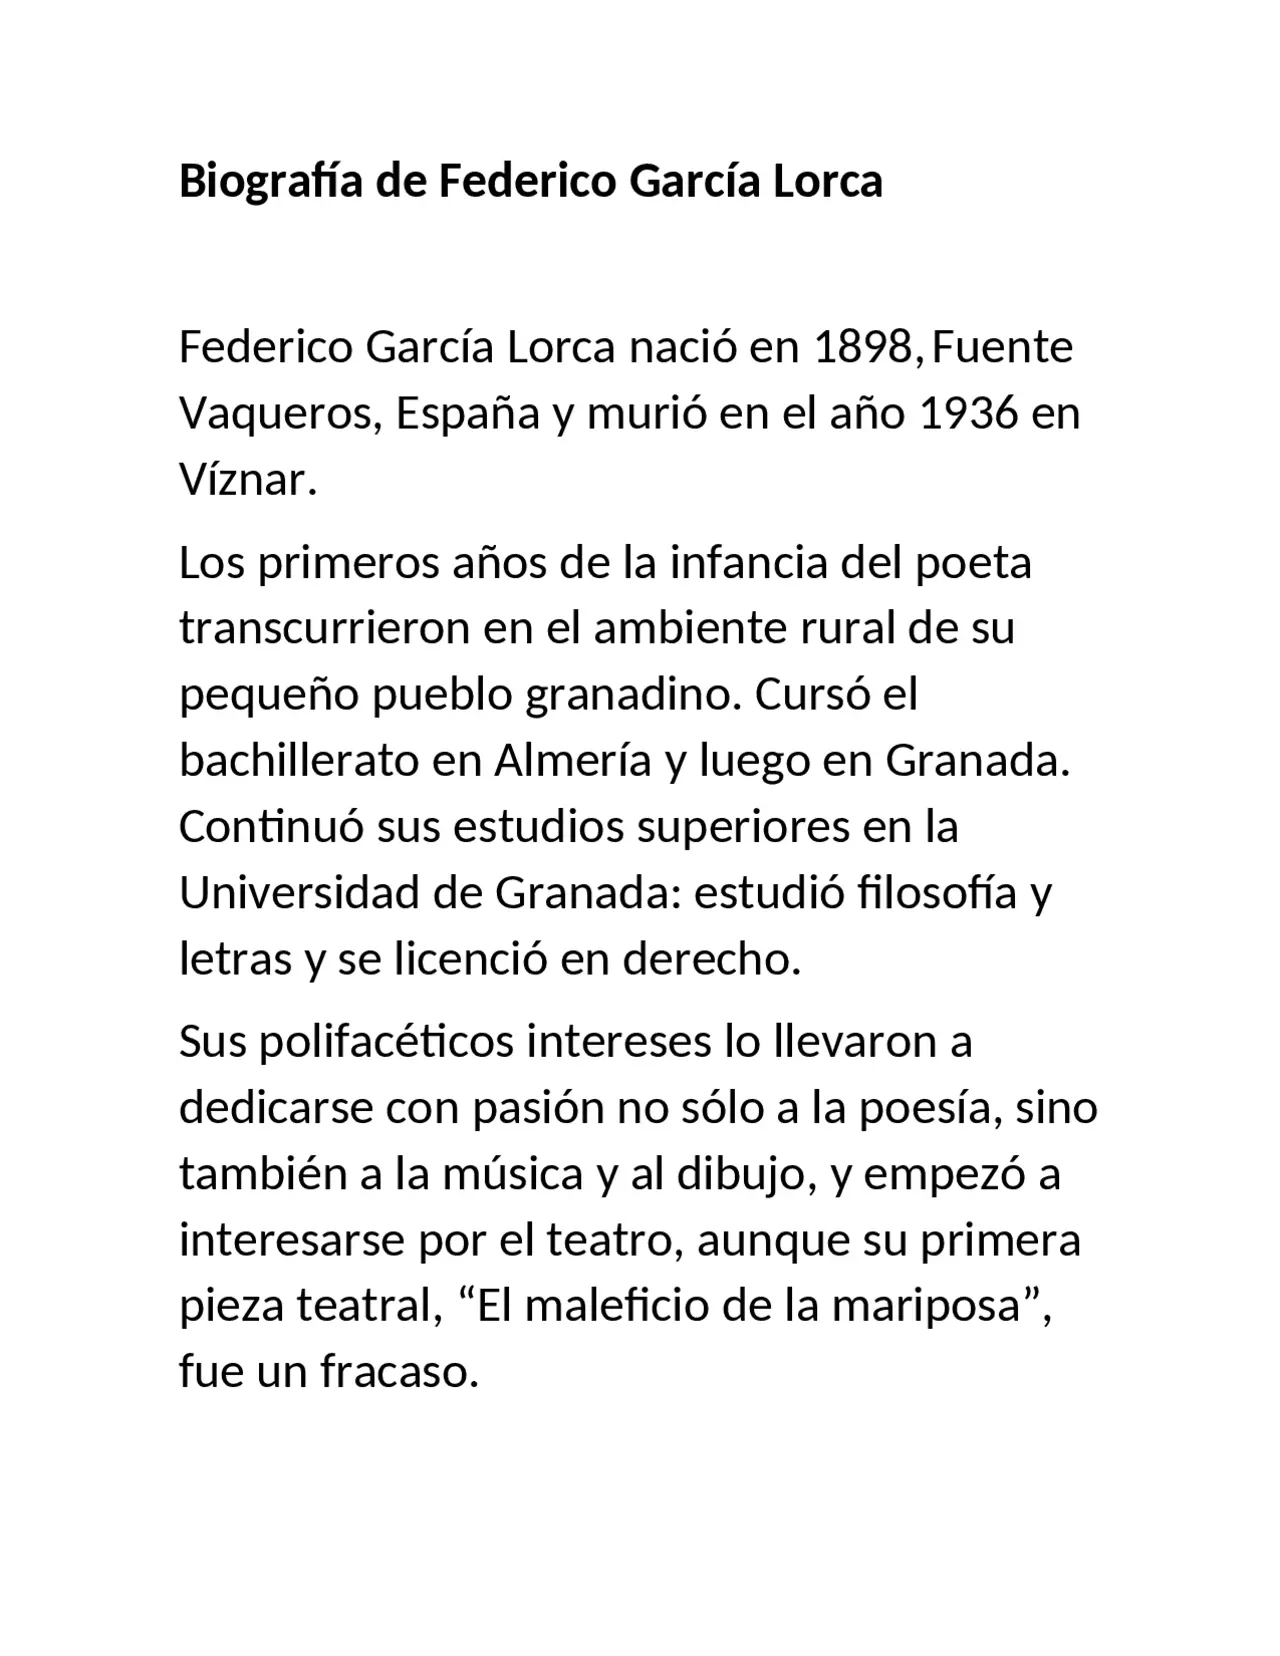 resumen de biografia de federico garcia lorca - Qué era lo más importante en la vida para Federico García Lorca